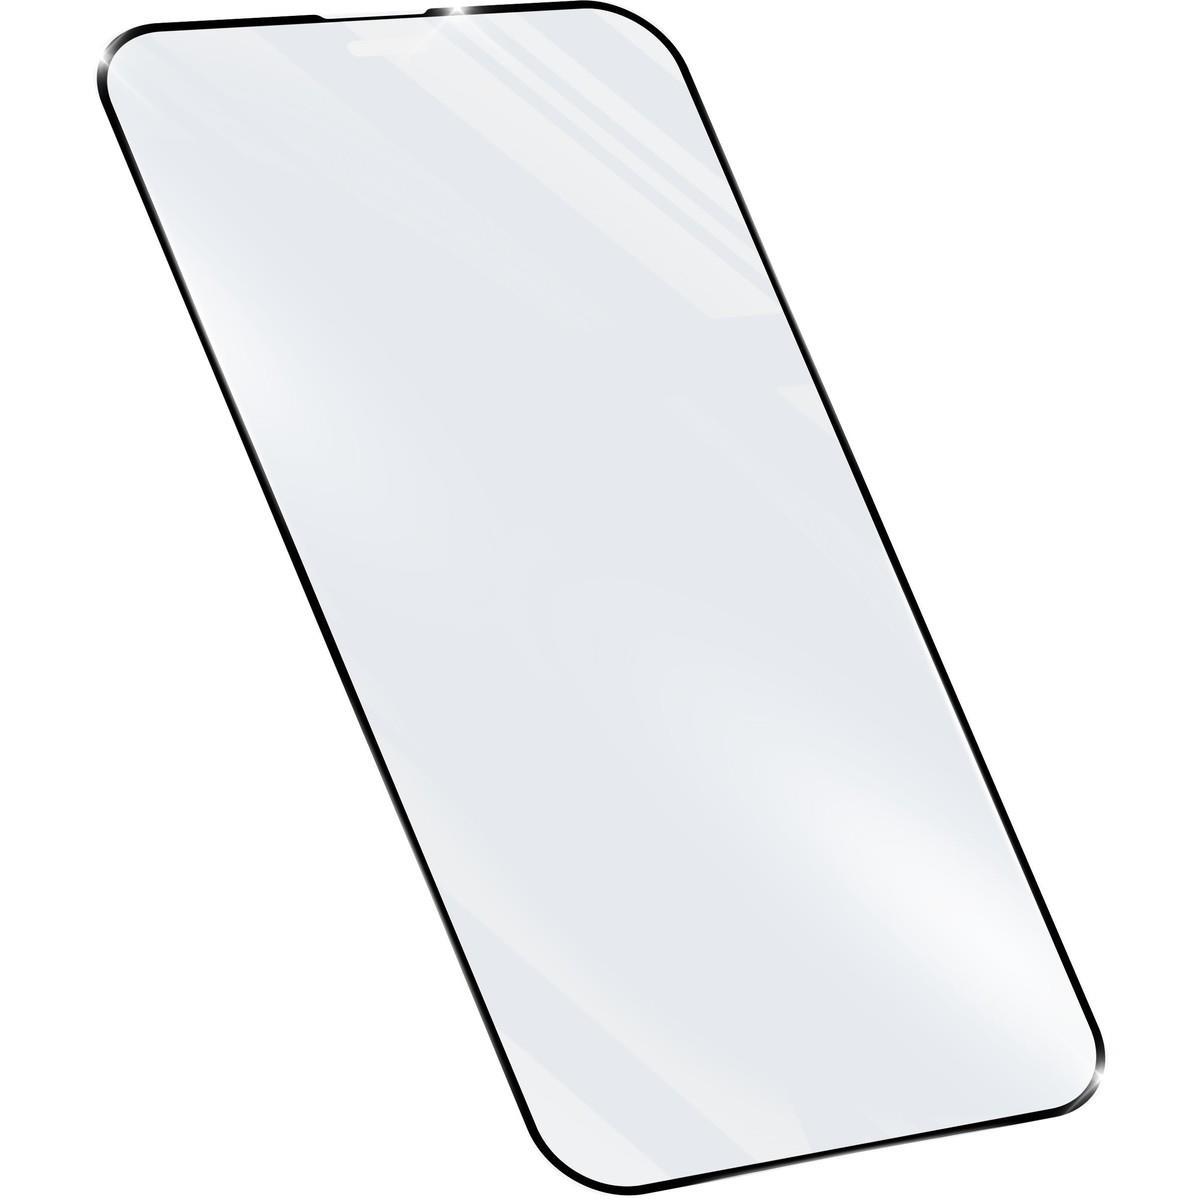 Schutzglas IMPACT GLASS CAPSULE für Apple iPhone 14 Plus / 14 Pro Max